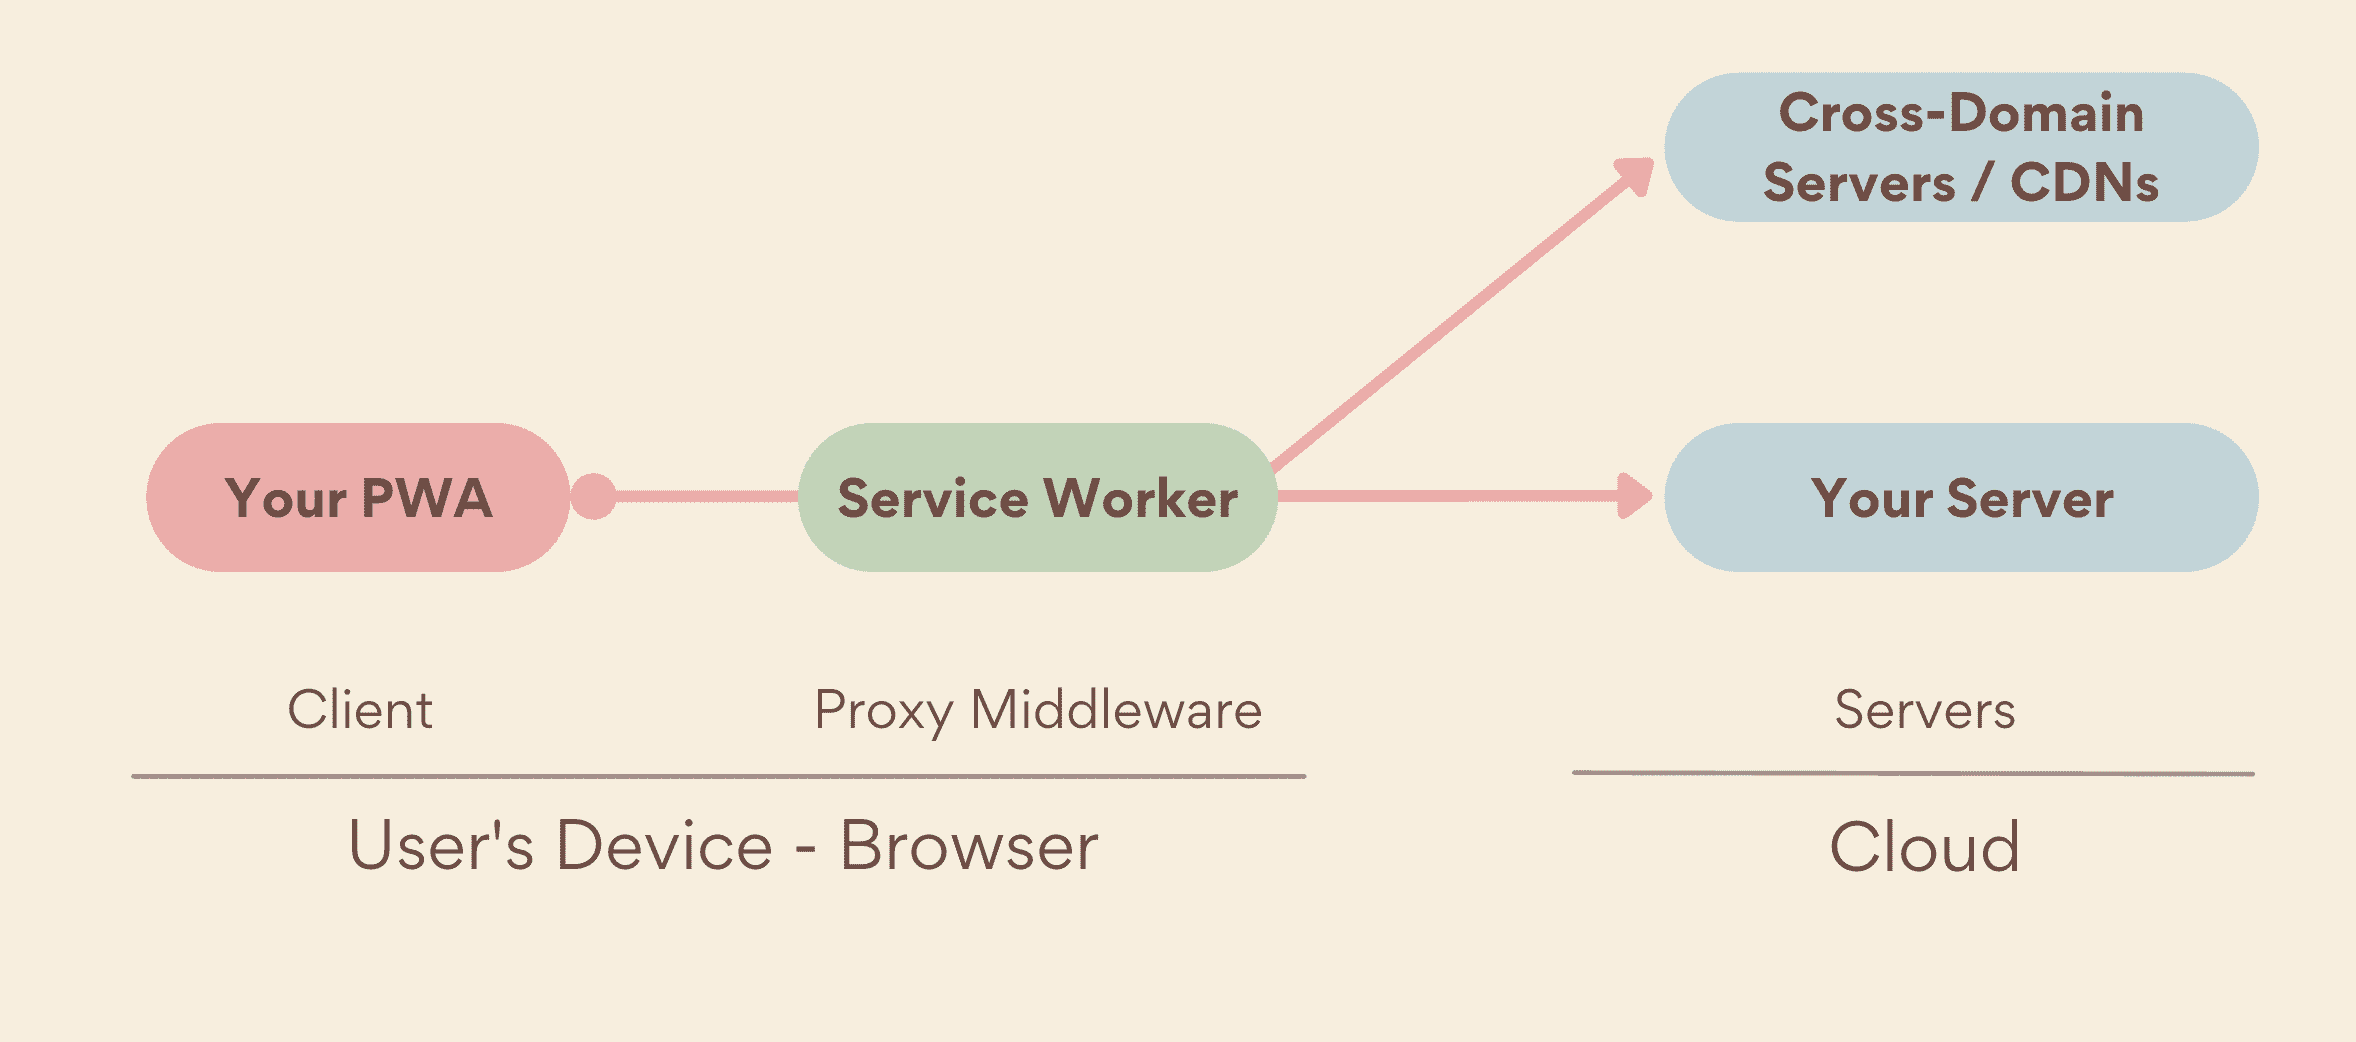 Сервис-воркер — это промежуточный прокси-сервер, работающий на стороне устройства, между PWA и серверами, включая как собственные, так и кросс-доменные серверы.